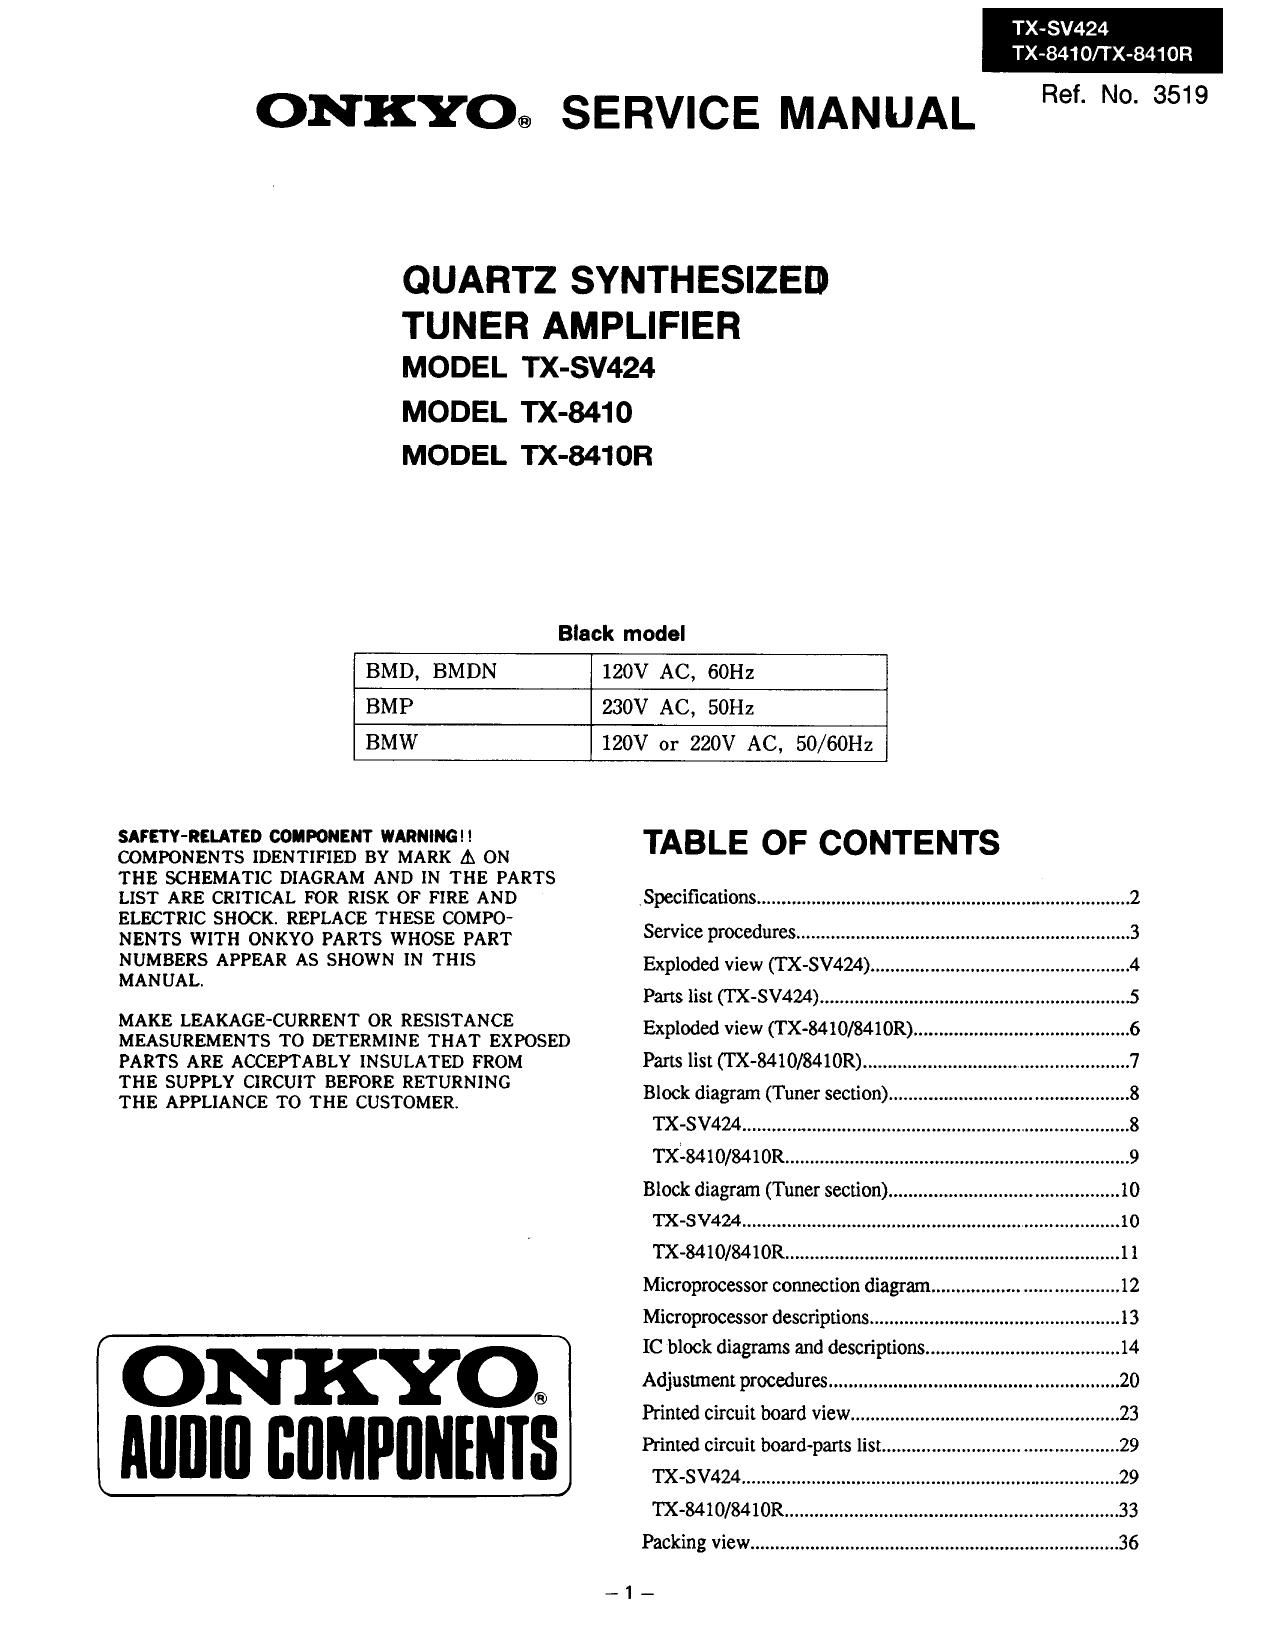 Onkyo TX 8410 Service Manual